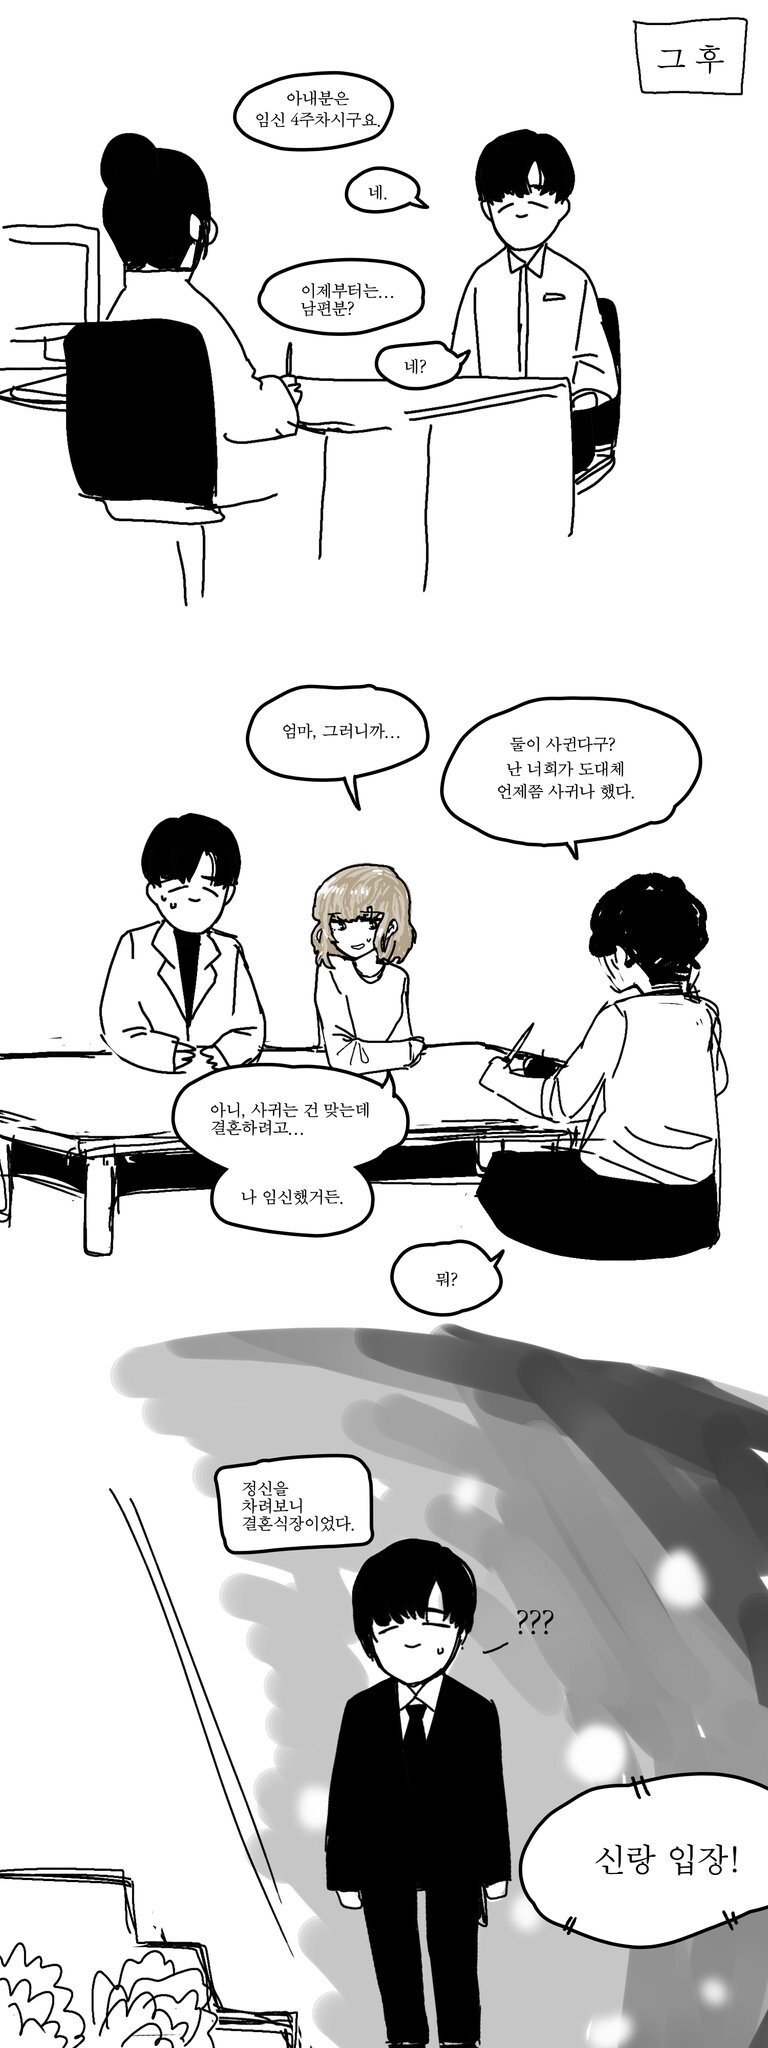 대한민국 남녀 차별이 심한 manhwa